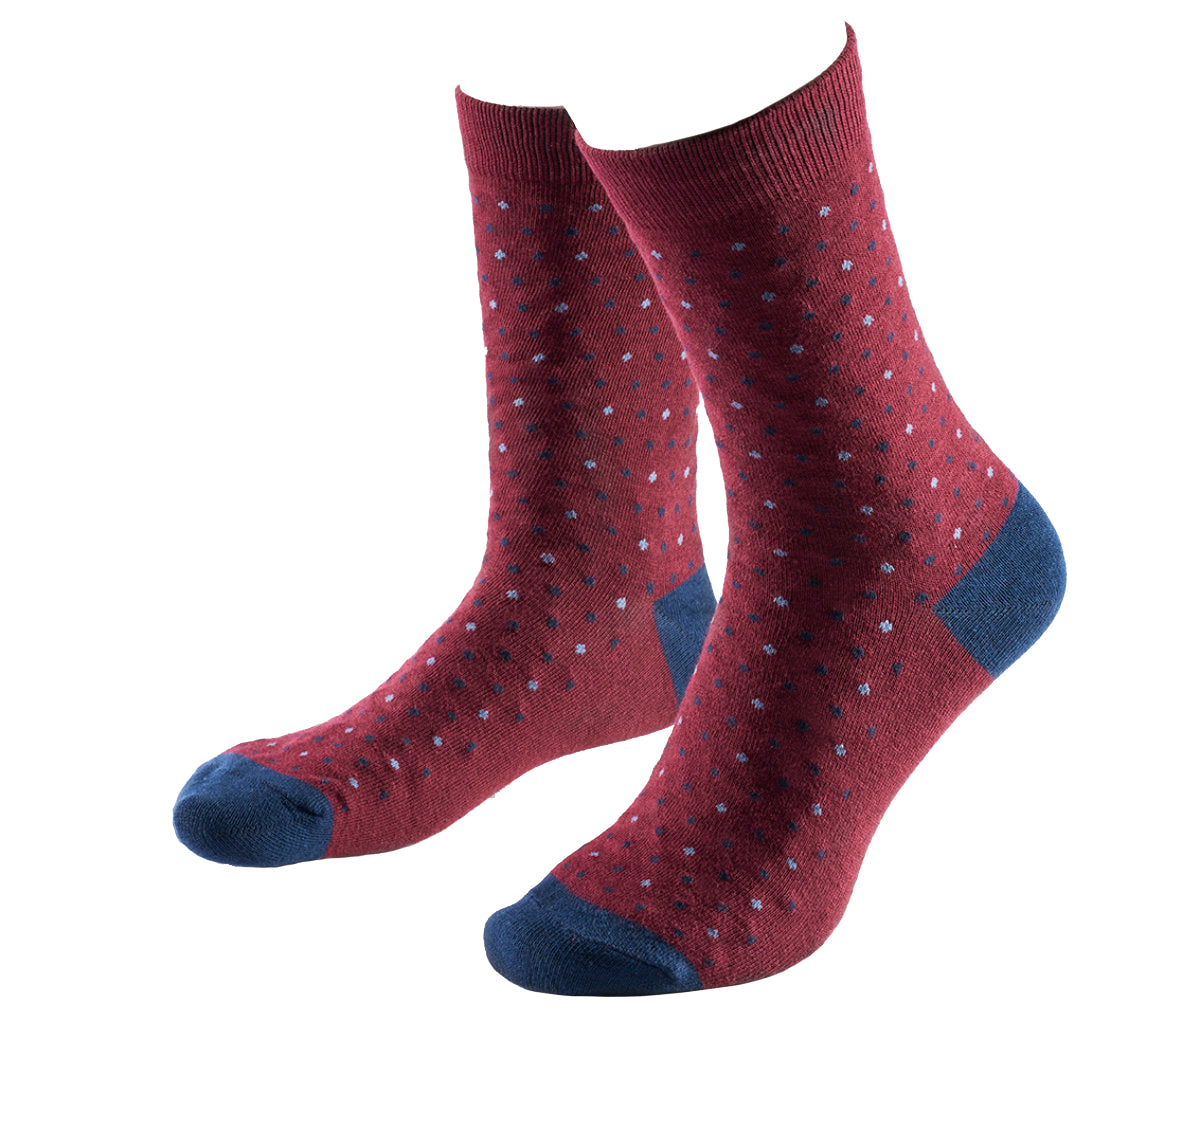 Prince Bowtie - Socken 1 Paar im Punkt-Design